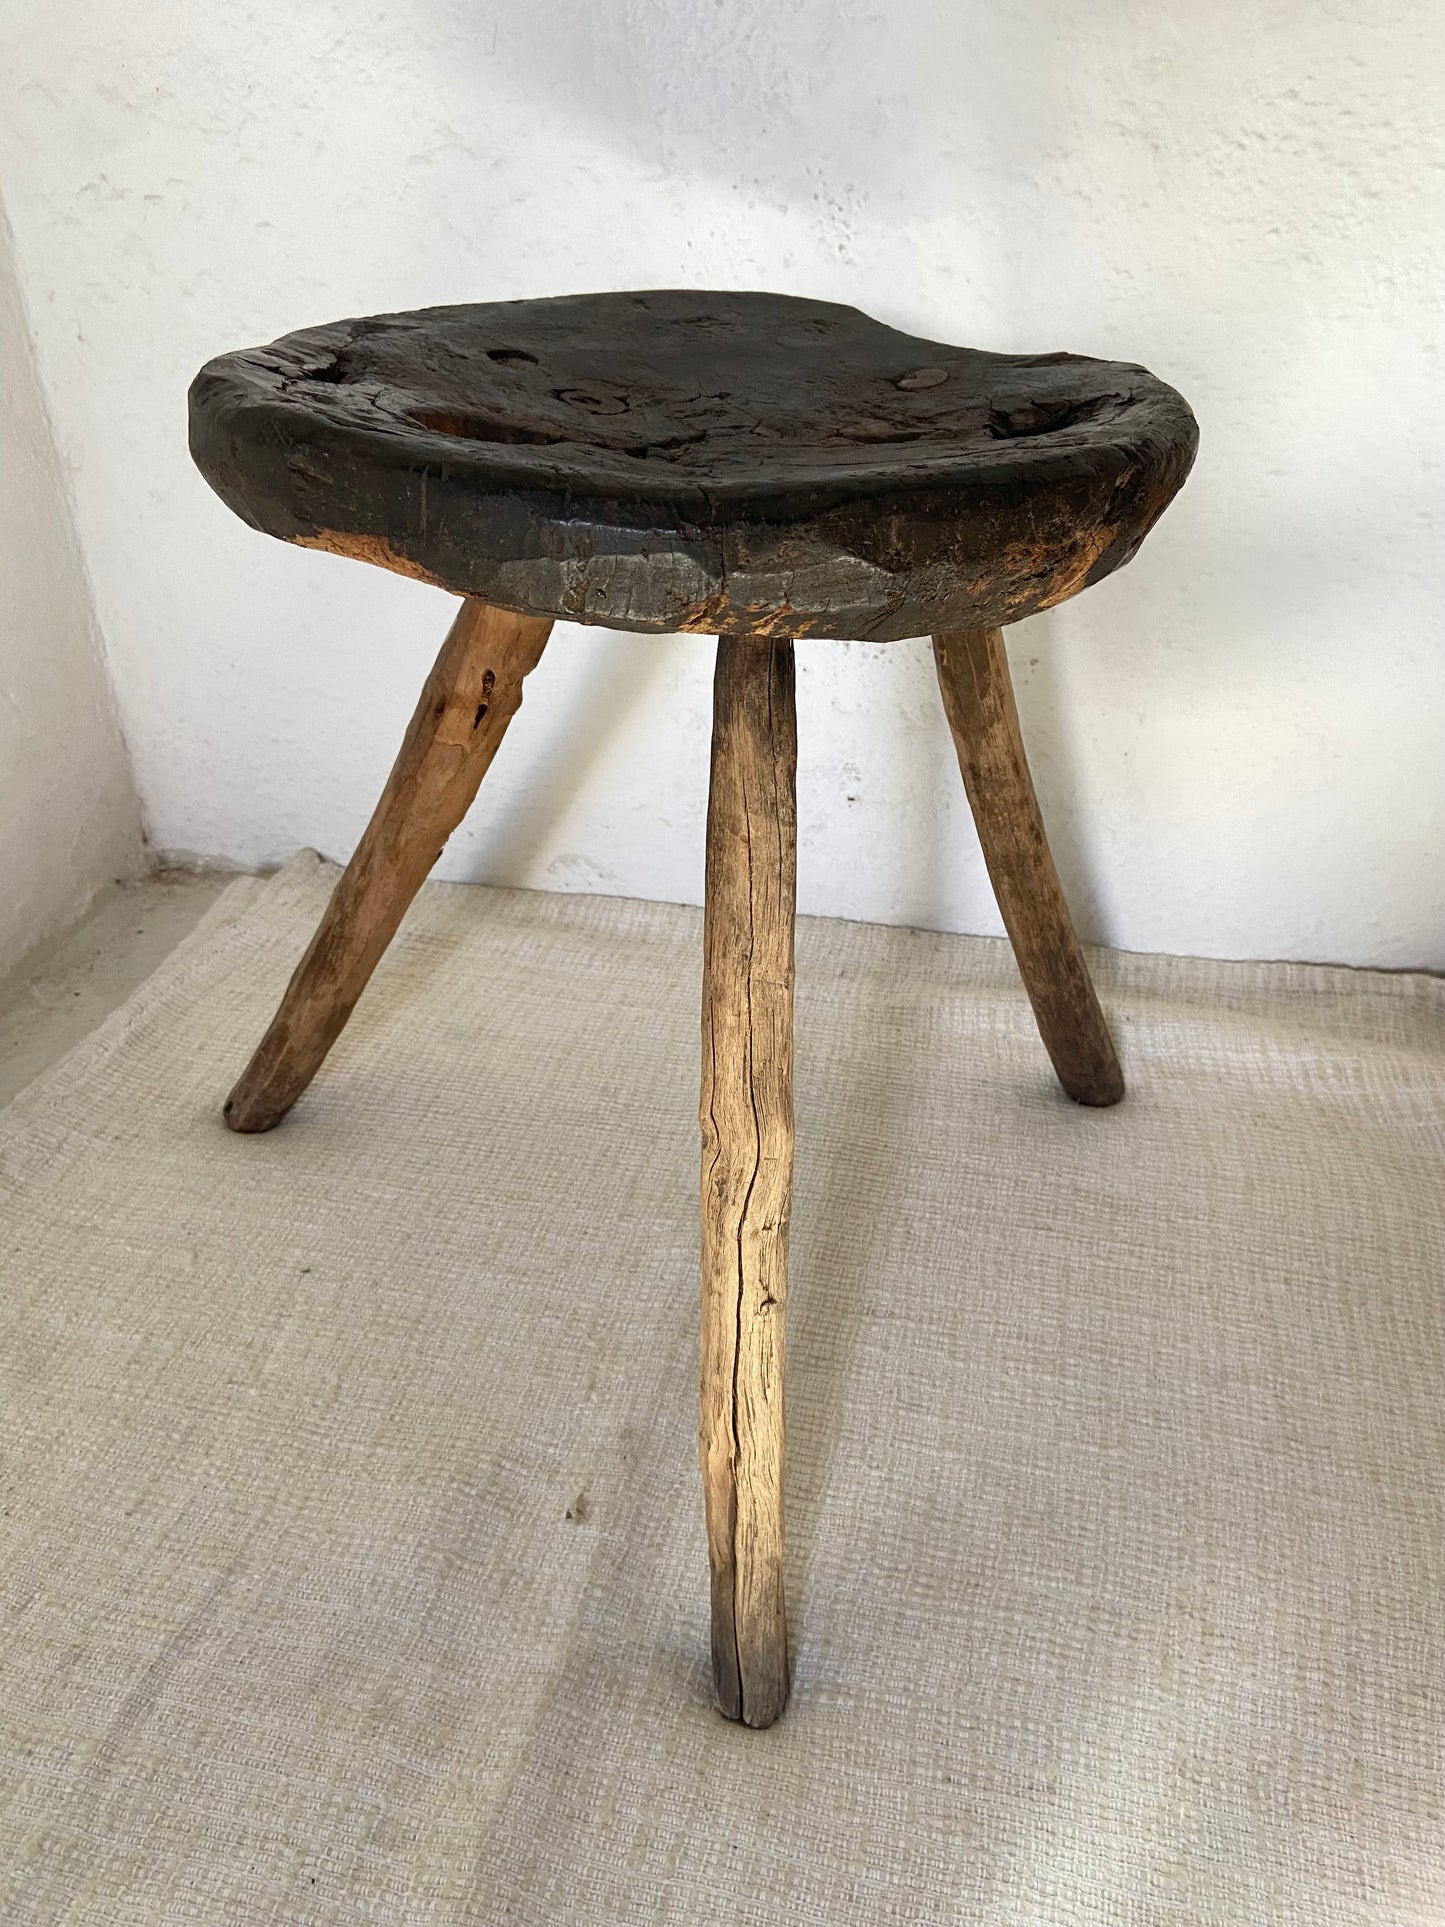 Banco de Mesquite Antiguo / Hardwood Antique Stool